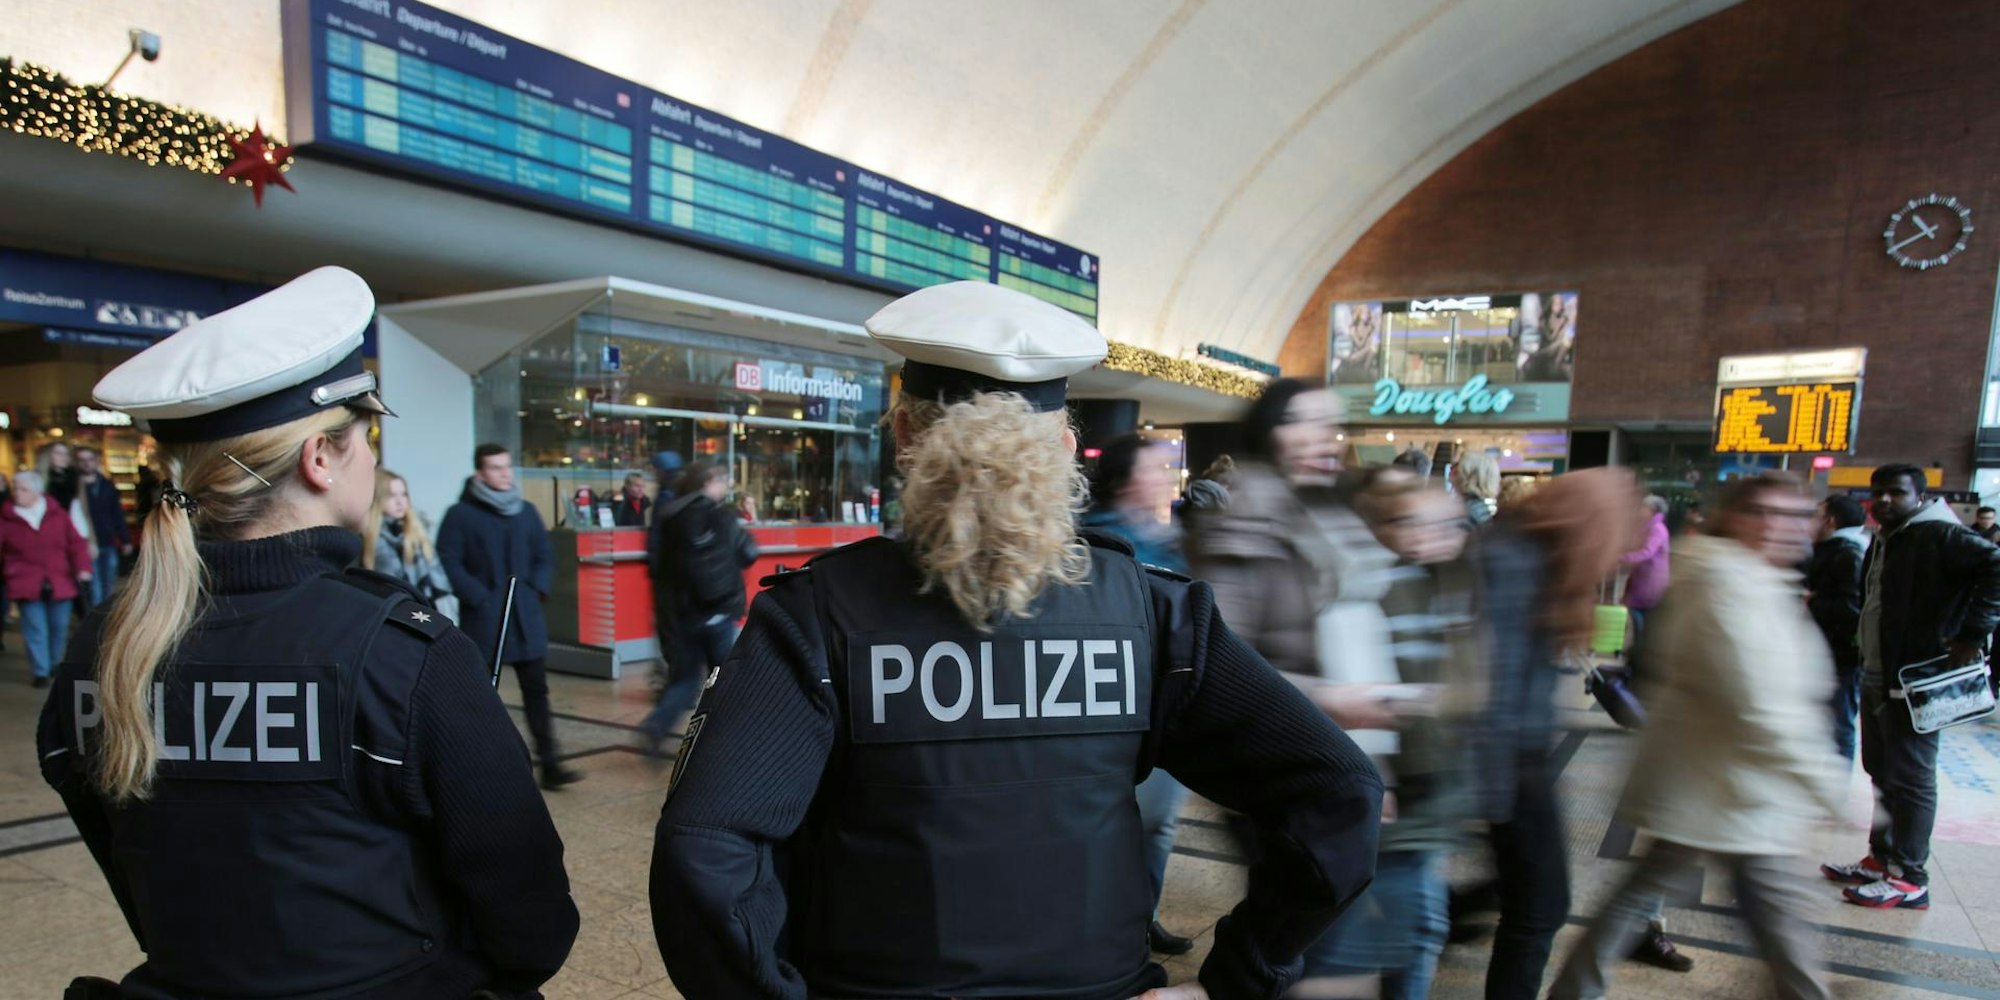 Polizei_Hbf_Symbol (2)